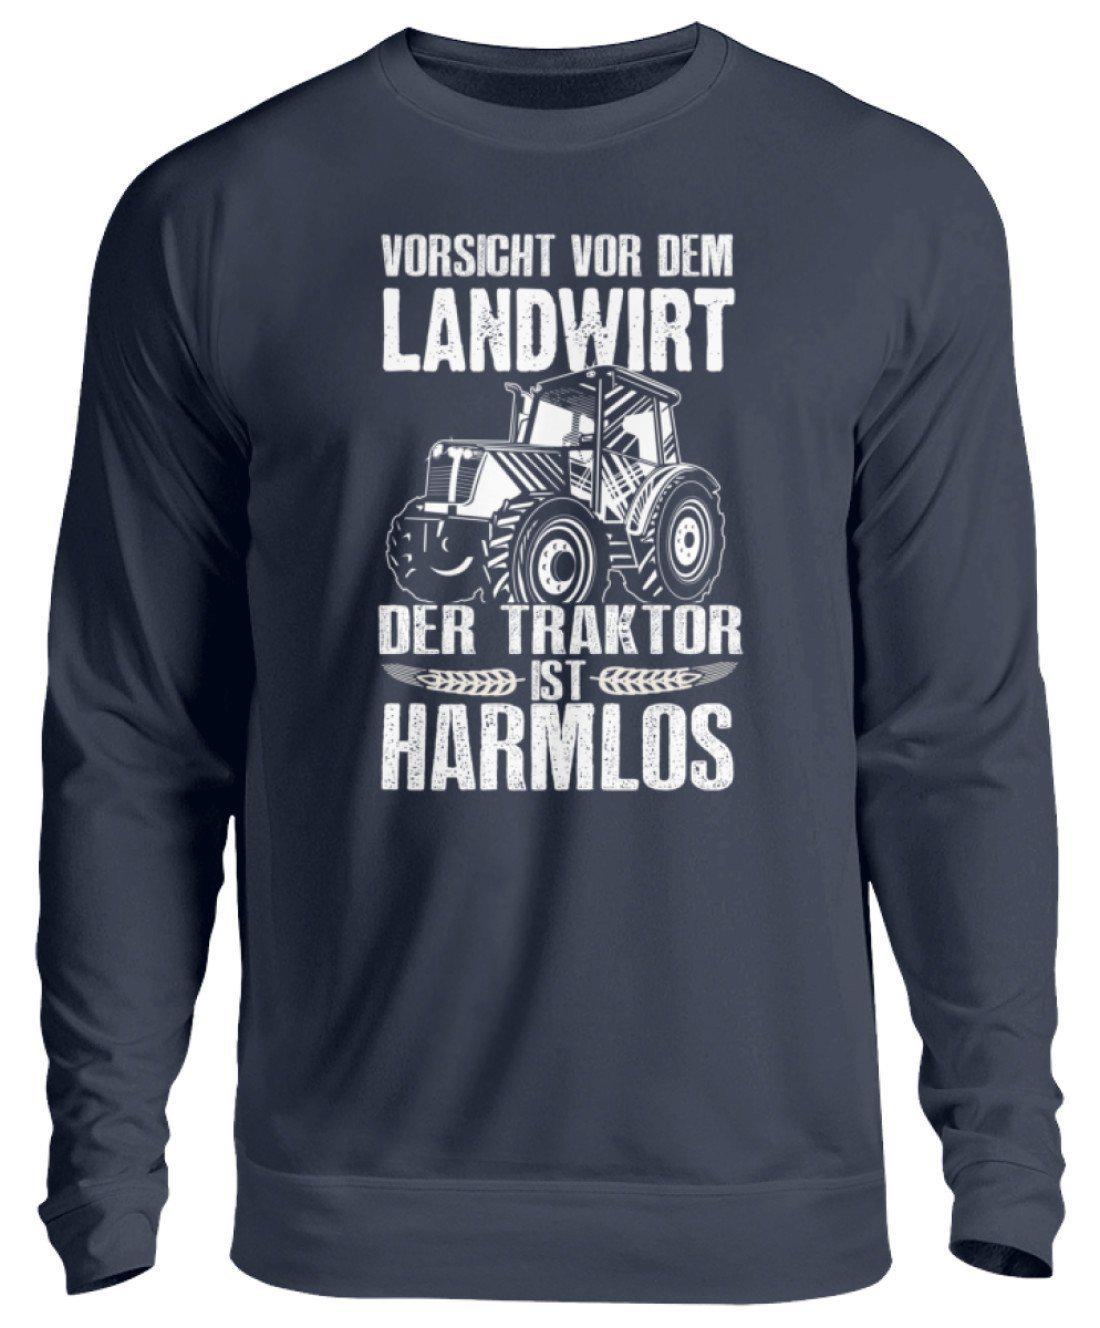 Der Traktor ist harmlos · Unisex Sweatshirt Pullover-Unisex Sweatshirt-Oxford Navy-S-Agrarstarz